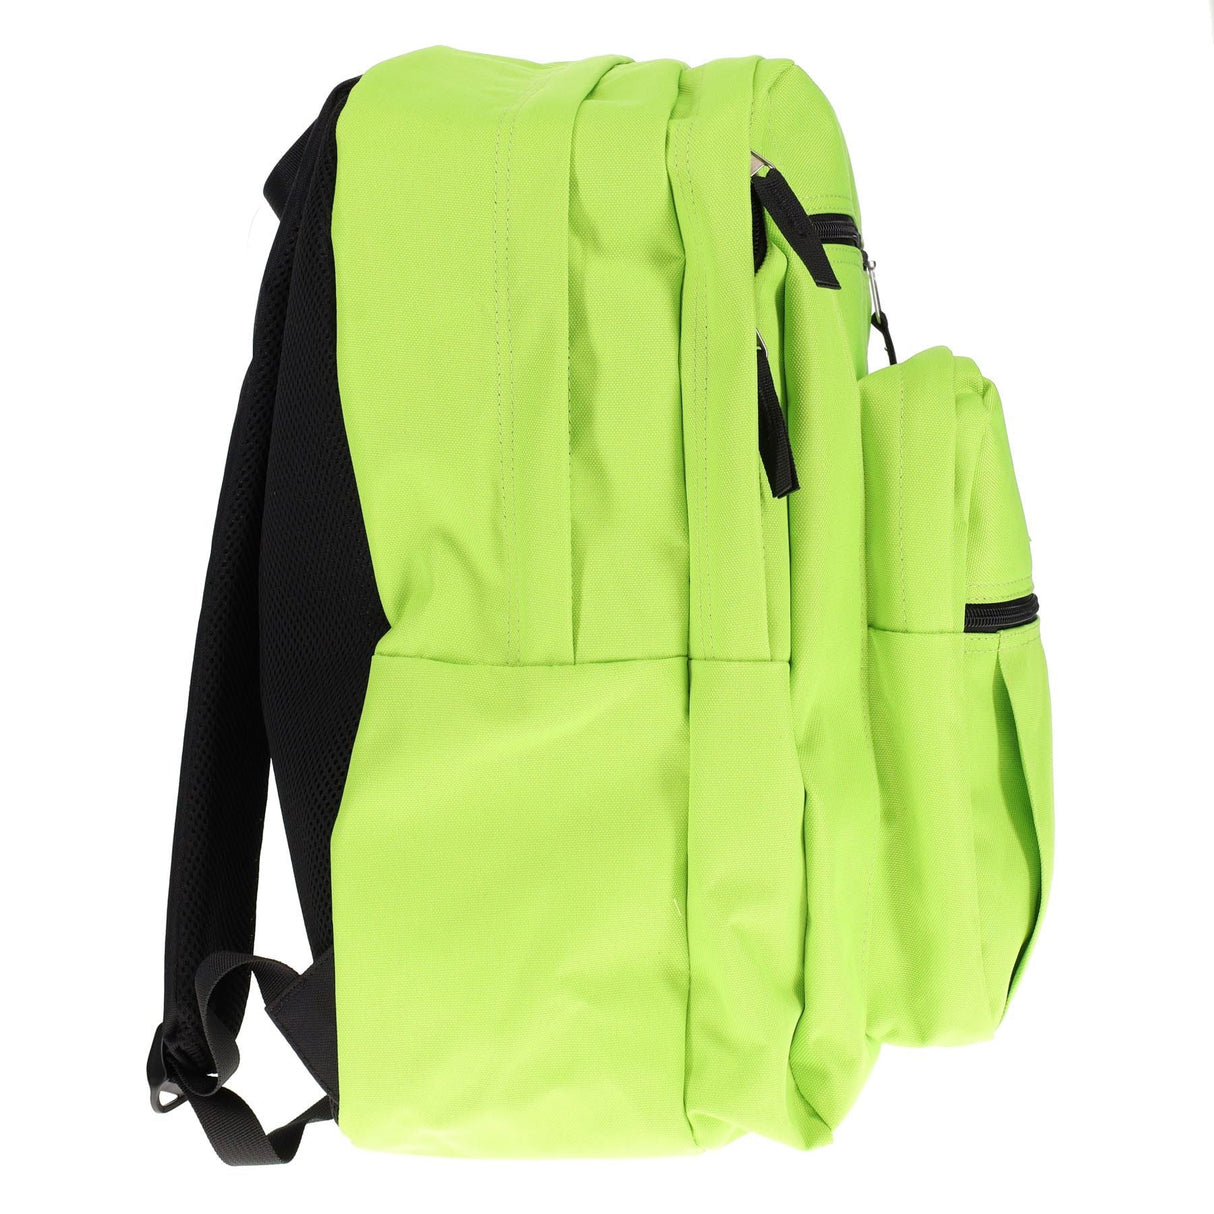 Premto 34L Backpack - Caterpillar Green-Backpacks-Premto|StationeryShop.co.uk